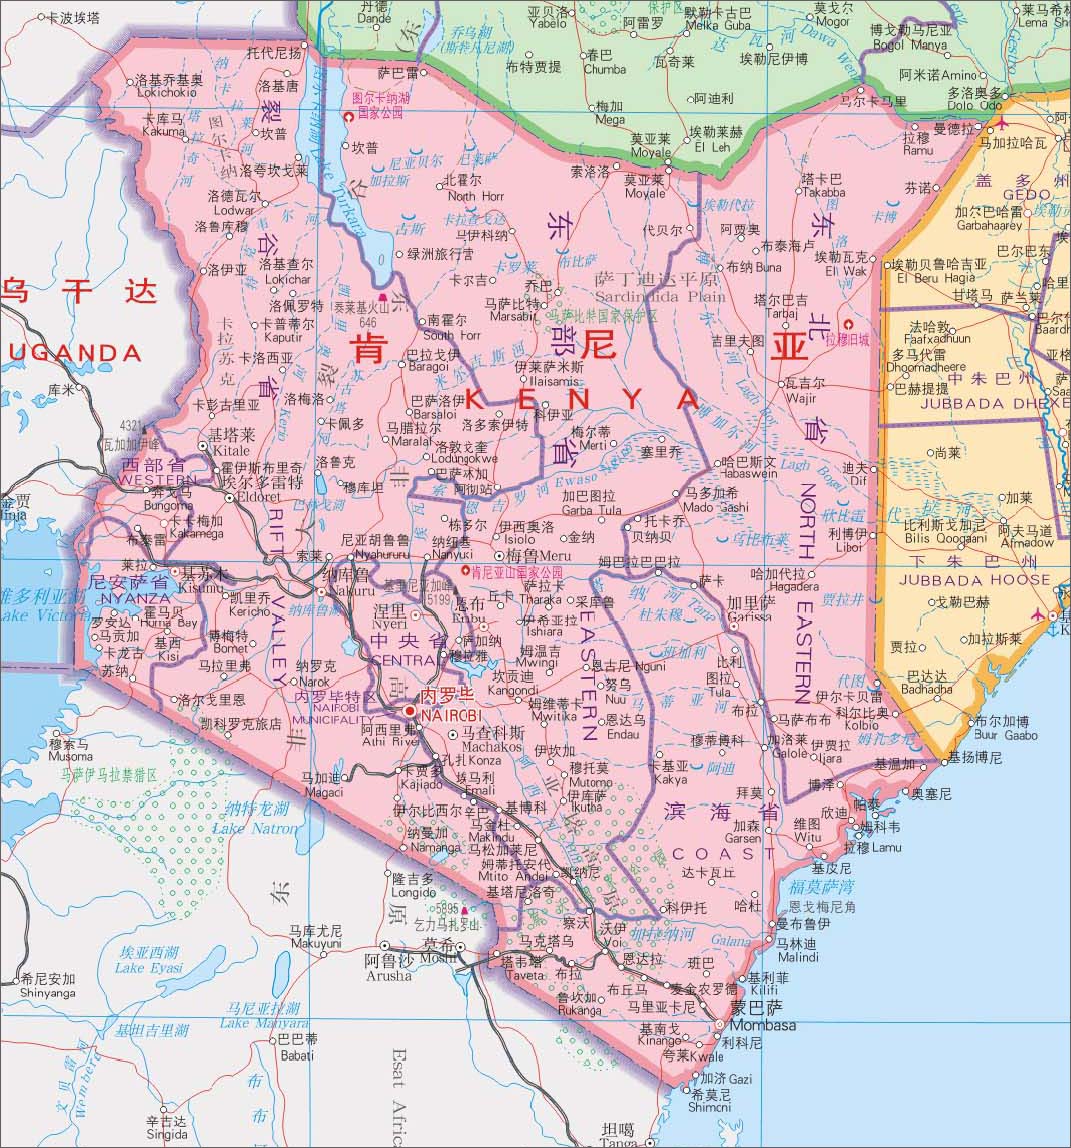 肯尼亚地图中英文对照版全图- 中英世界地图- 